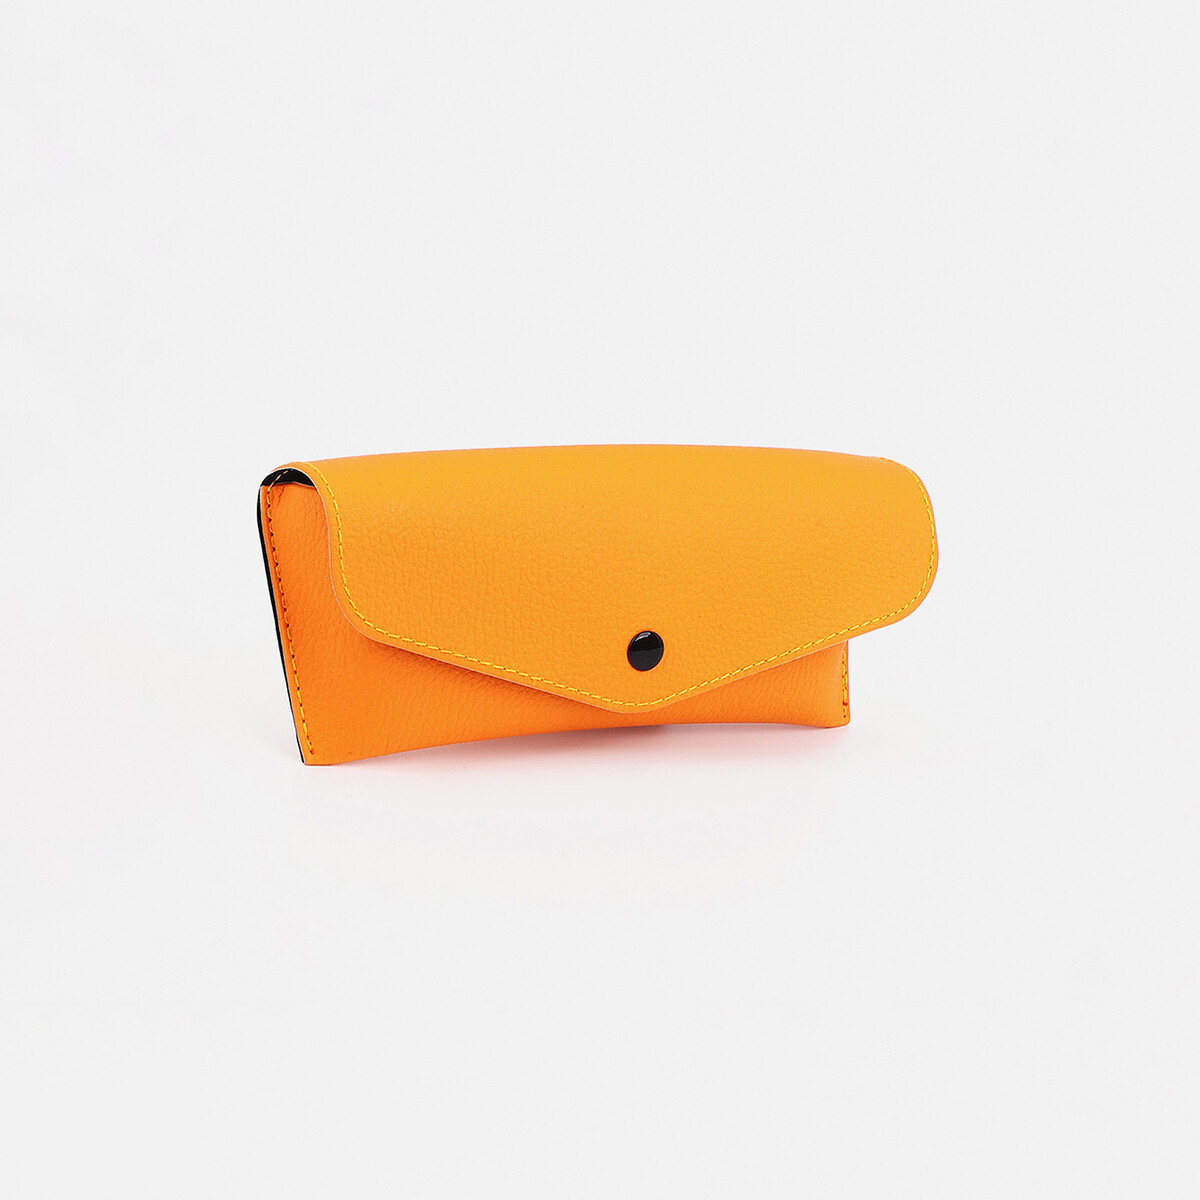 Футляр для очков на кнопке, салфетка, цвет оранжевый футляр для очков на кнопке 15 см × 3 см × 6 см голубой прозрачный